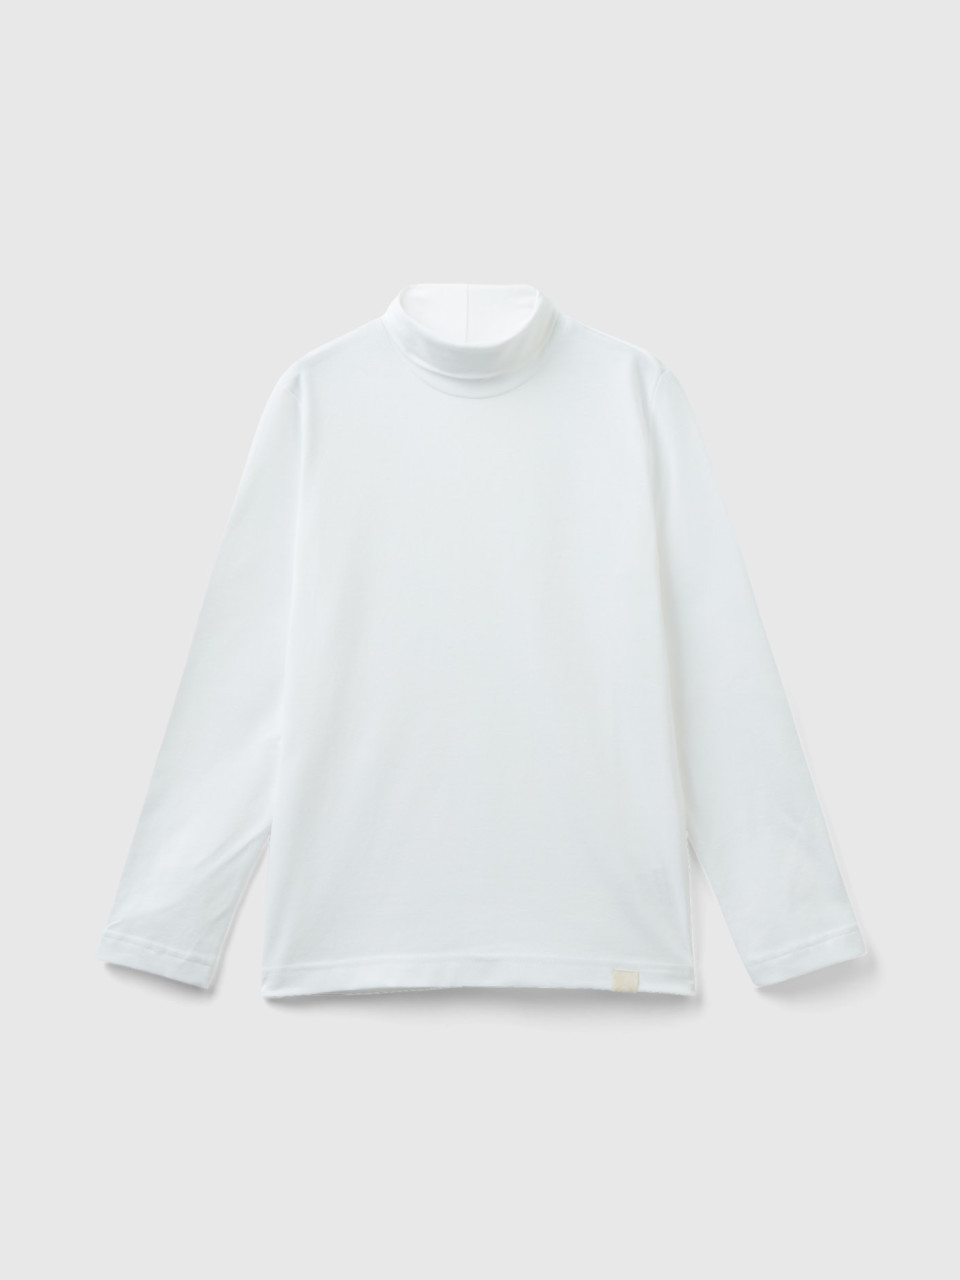 Benetton, Camiseta De Cuello Alto Y Manga Larga, Blanco, Niños